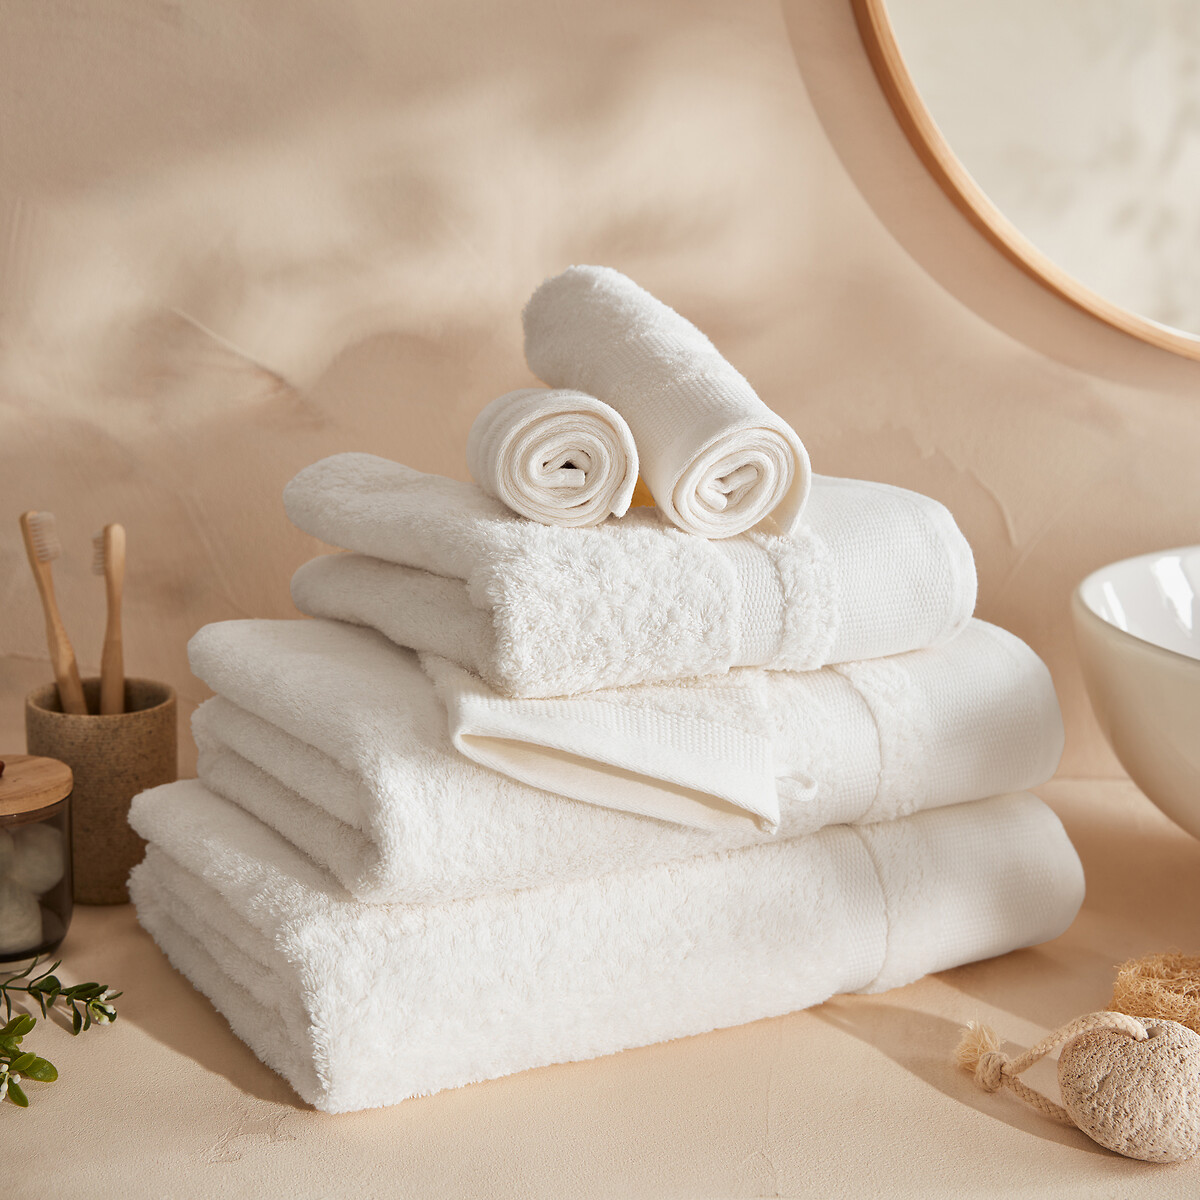 Kheops egyptian cotton bath towel La Redoute Interieurs